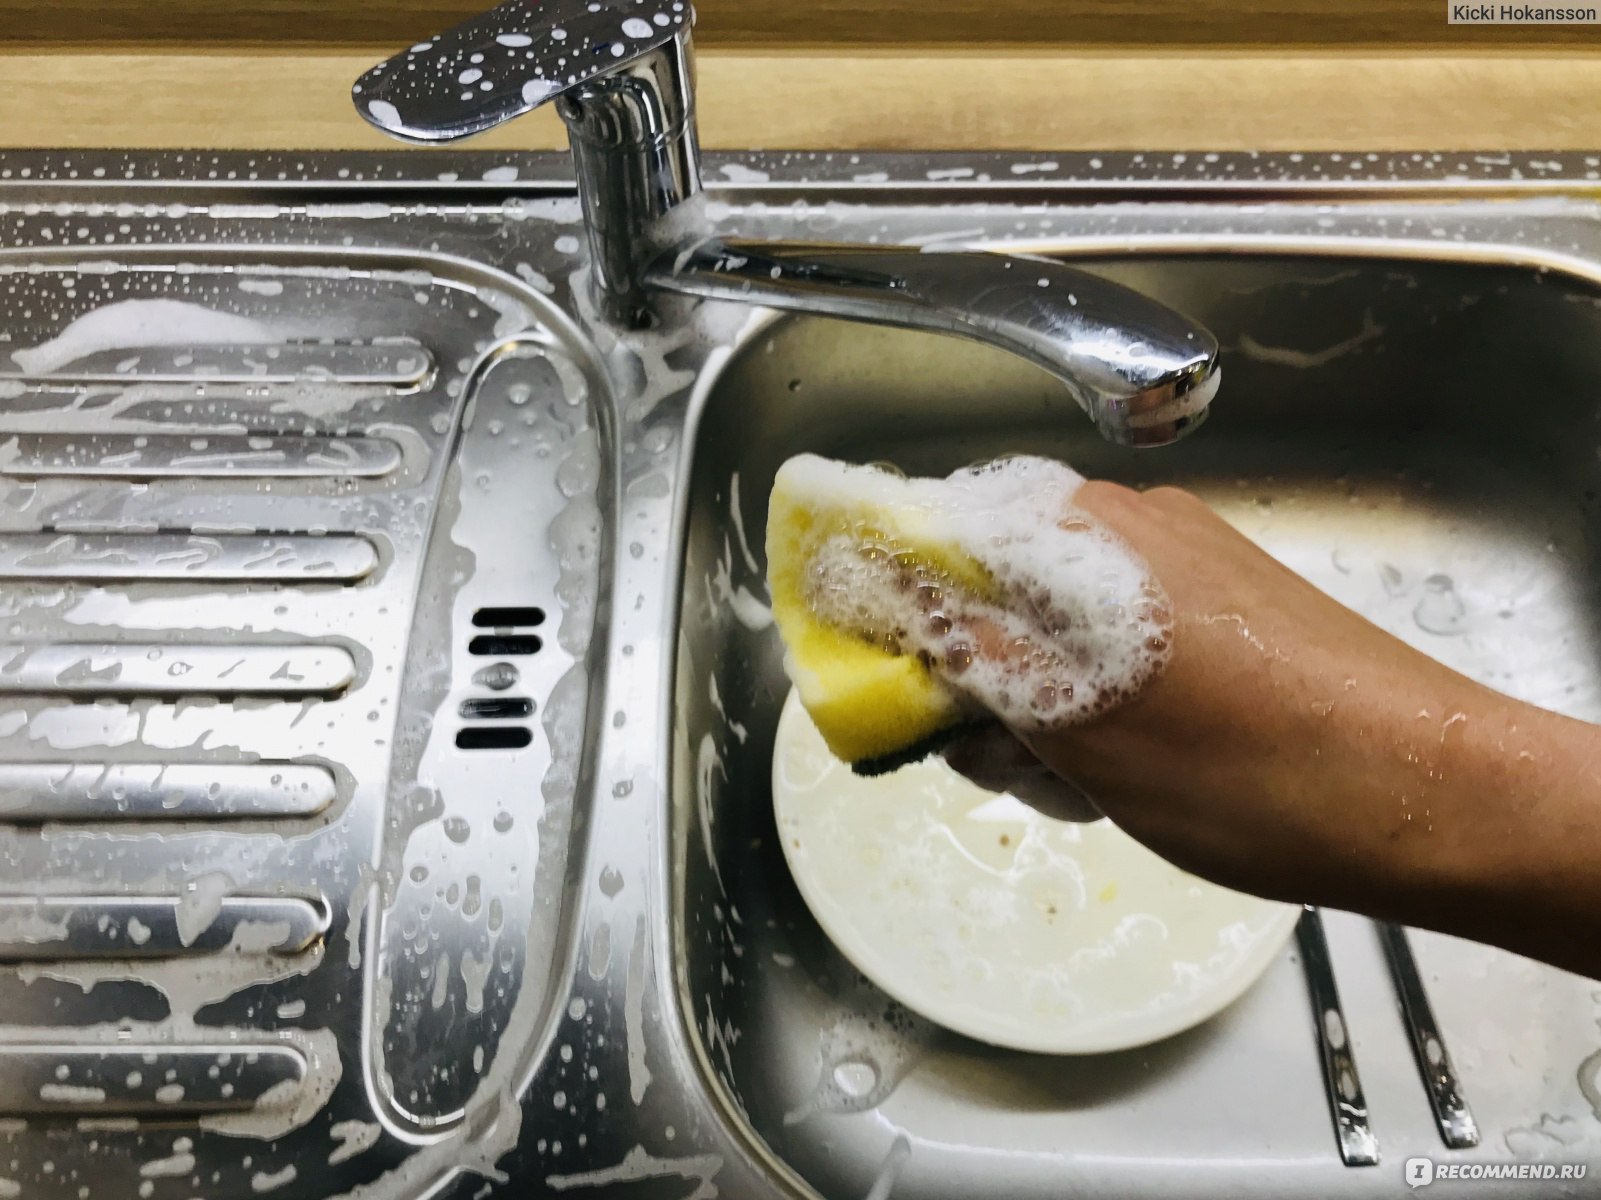 Запах мытье посуды средство. Немытая посуда в раковине. Раковина для мытья посуды. Помыть посуду. Посуда после мытья.